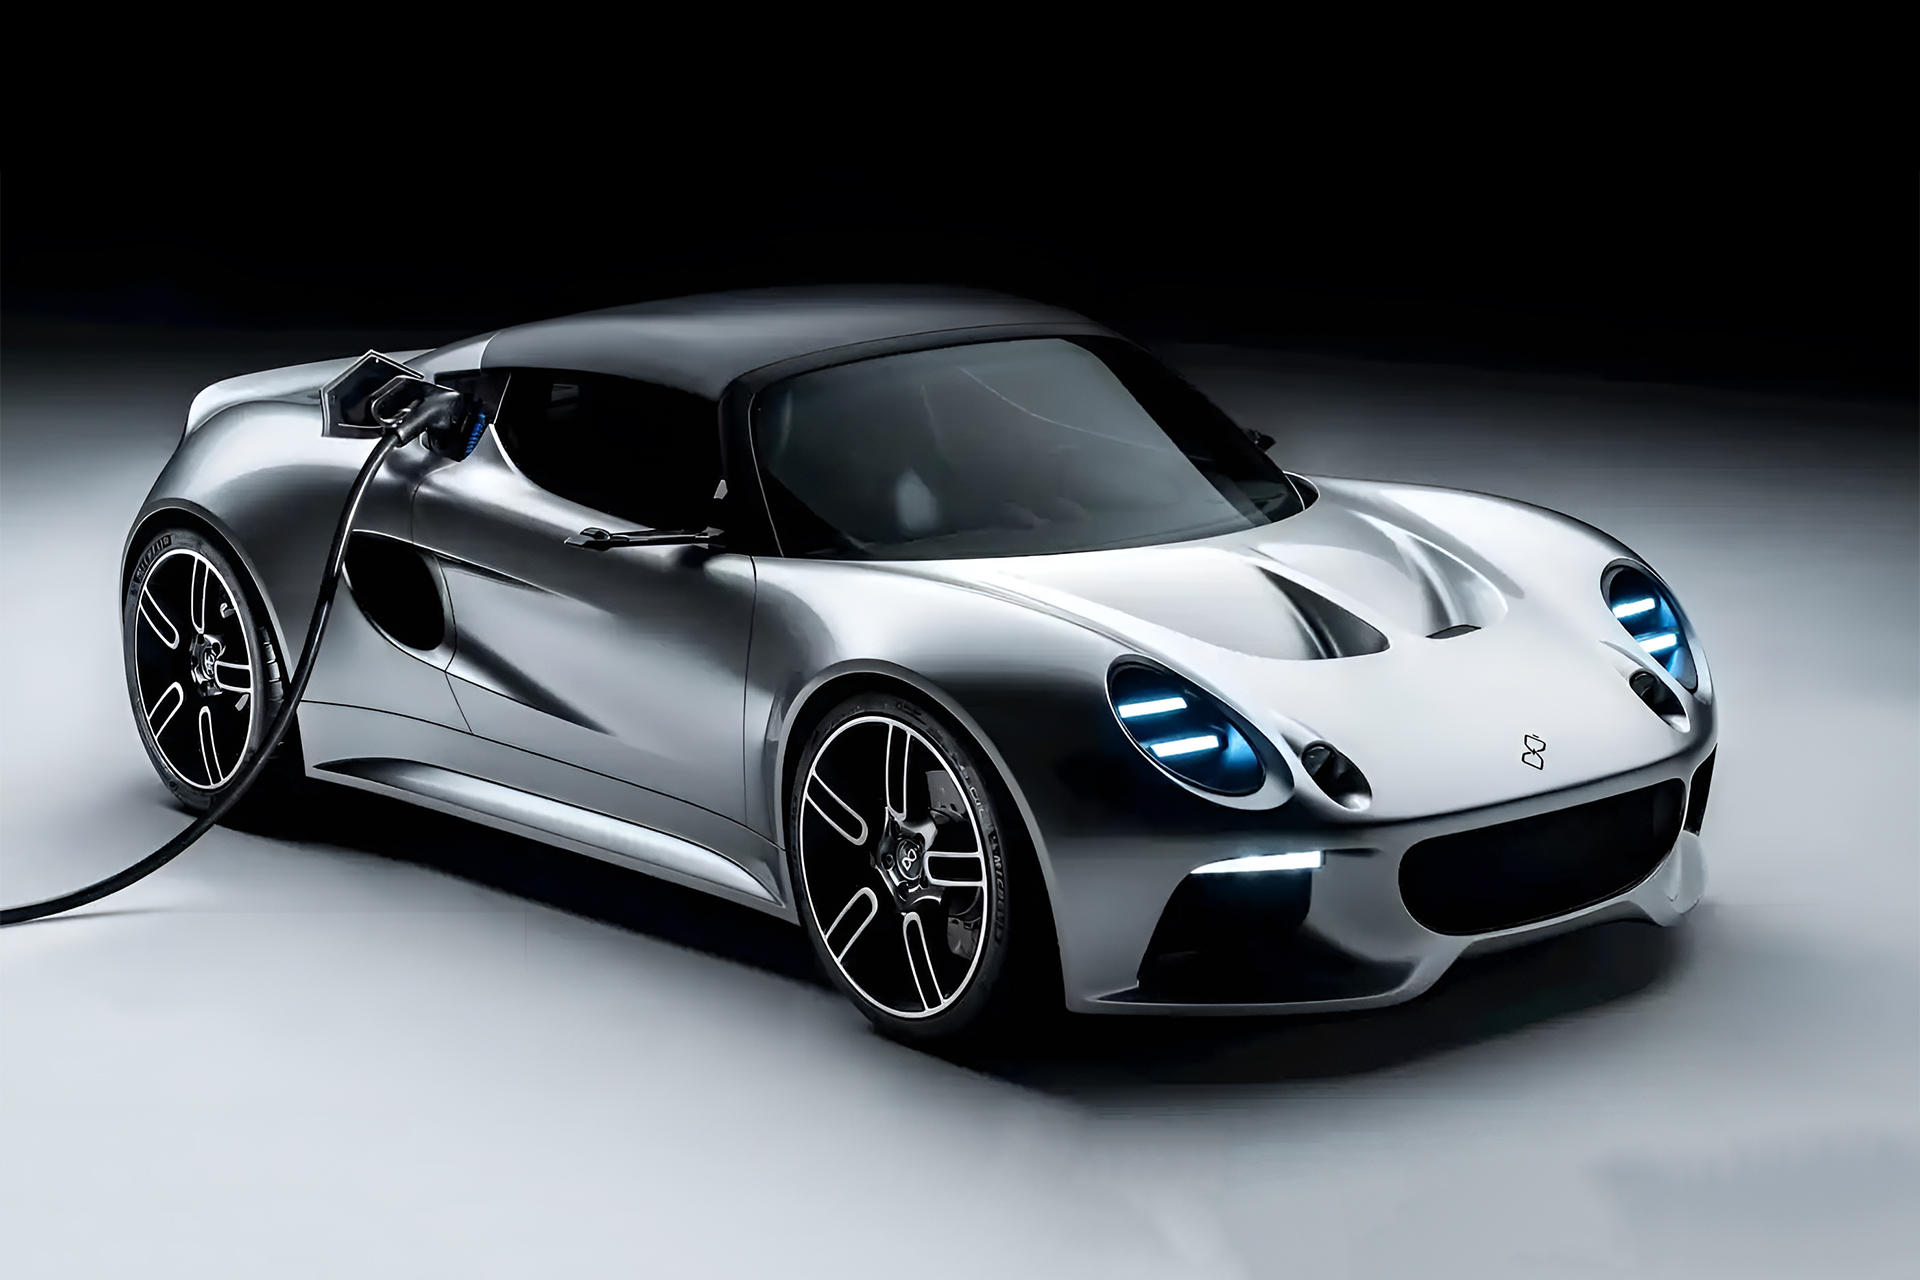 Lotus Elise ressurge como um carro elétrico esportivo que recarrega as baterias em apenas 6 minutos